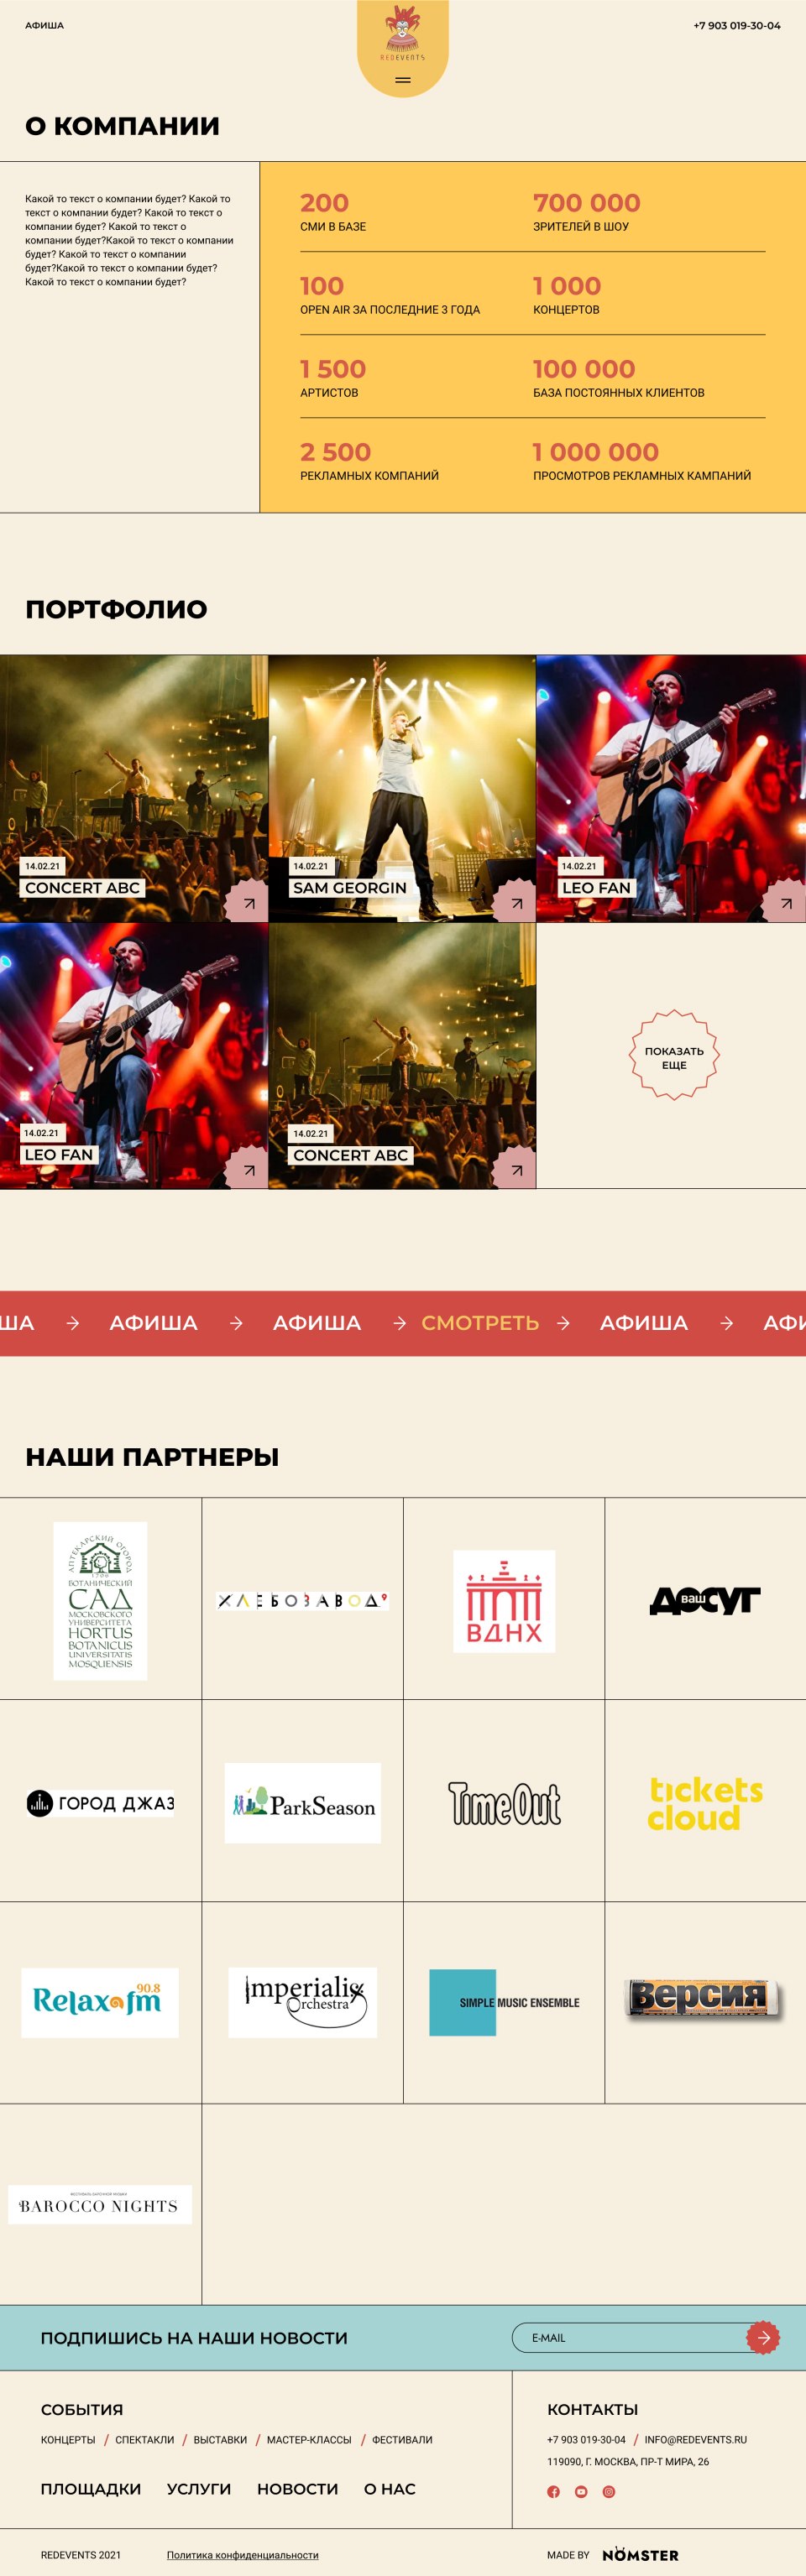 Дизайн макетов и разработка сайта для концертов №9